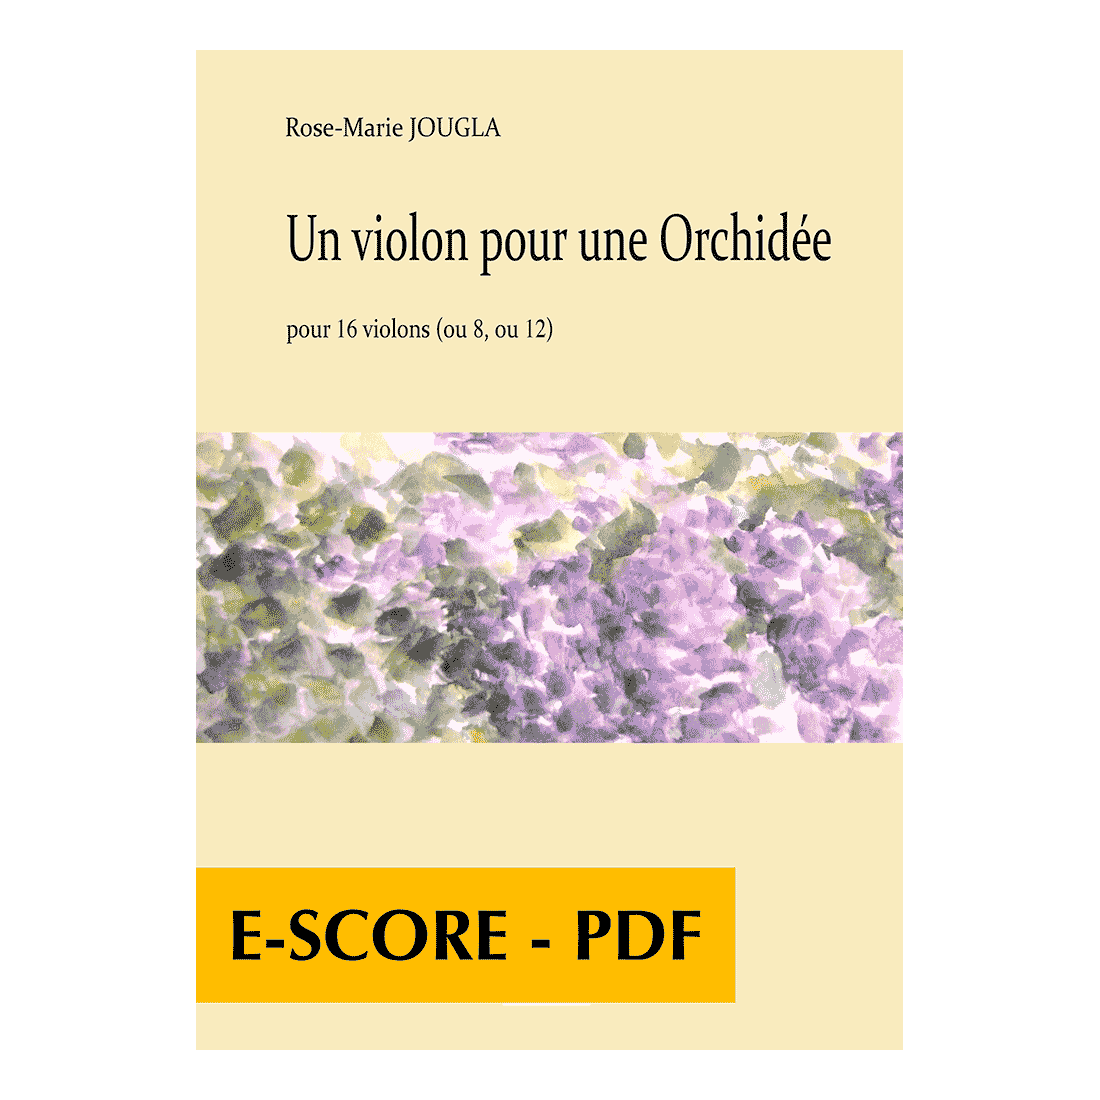 Un violon pour une Orchidée für 16 Violinen - E-score PDF